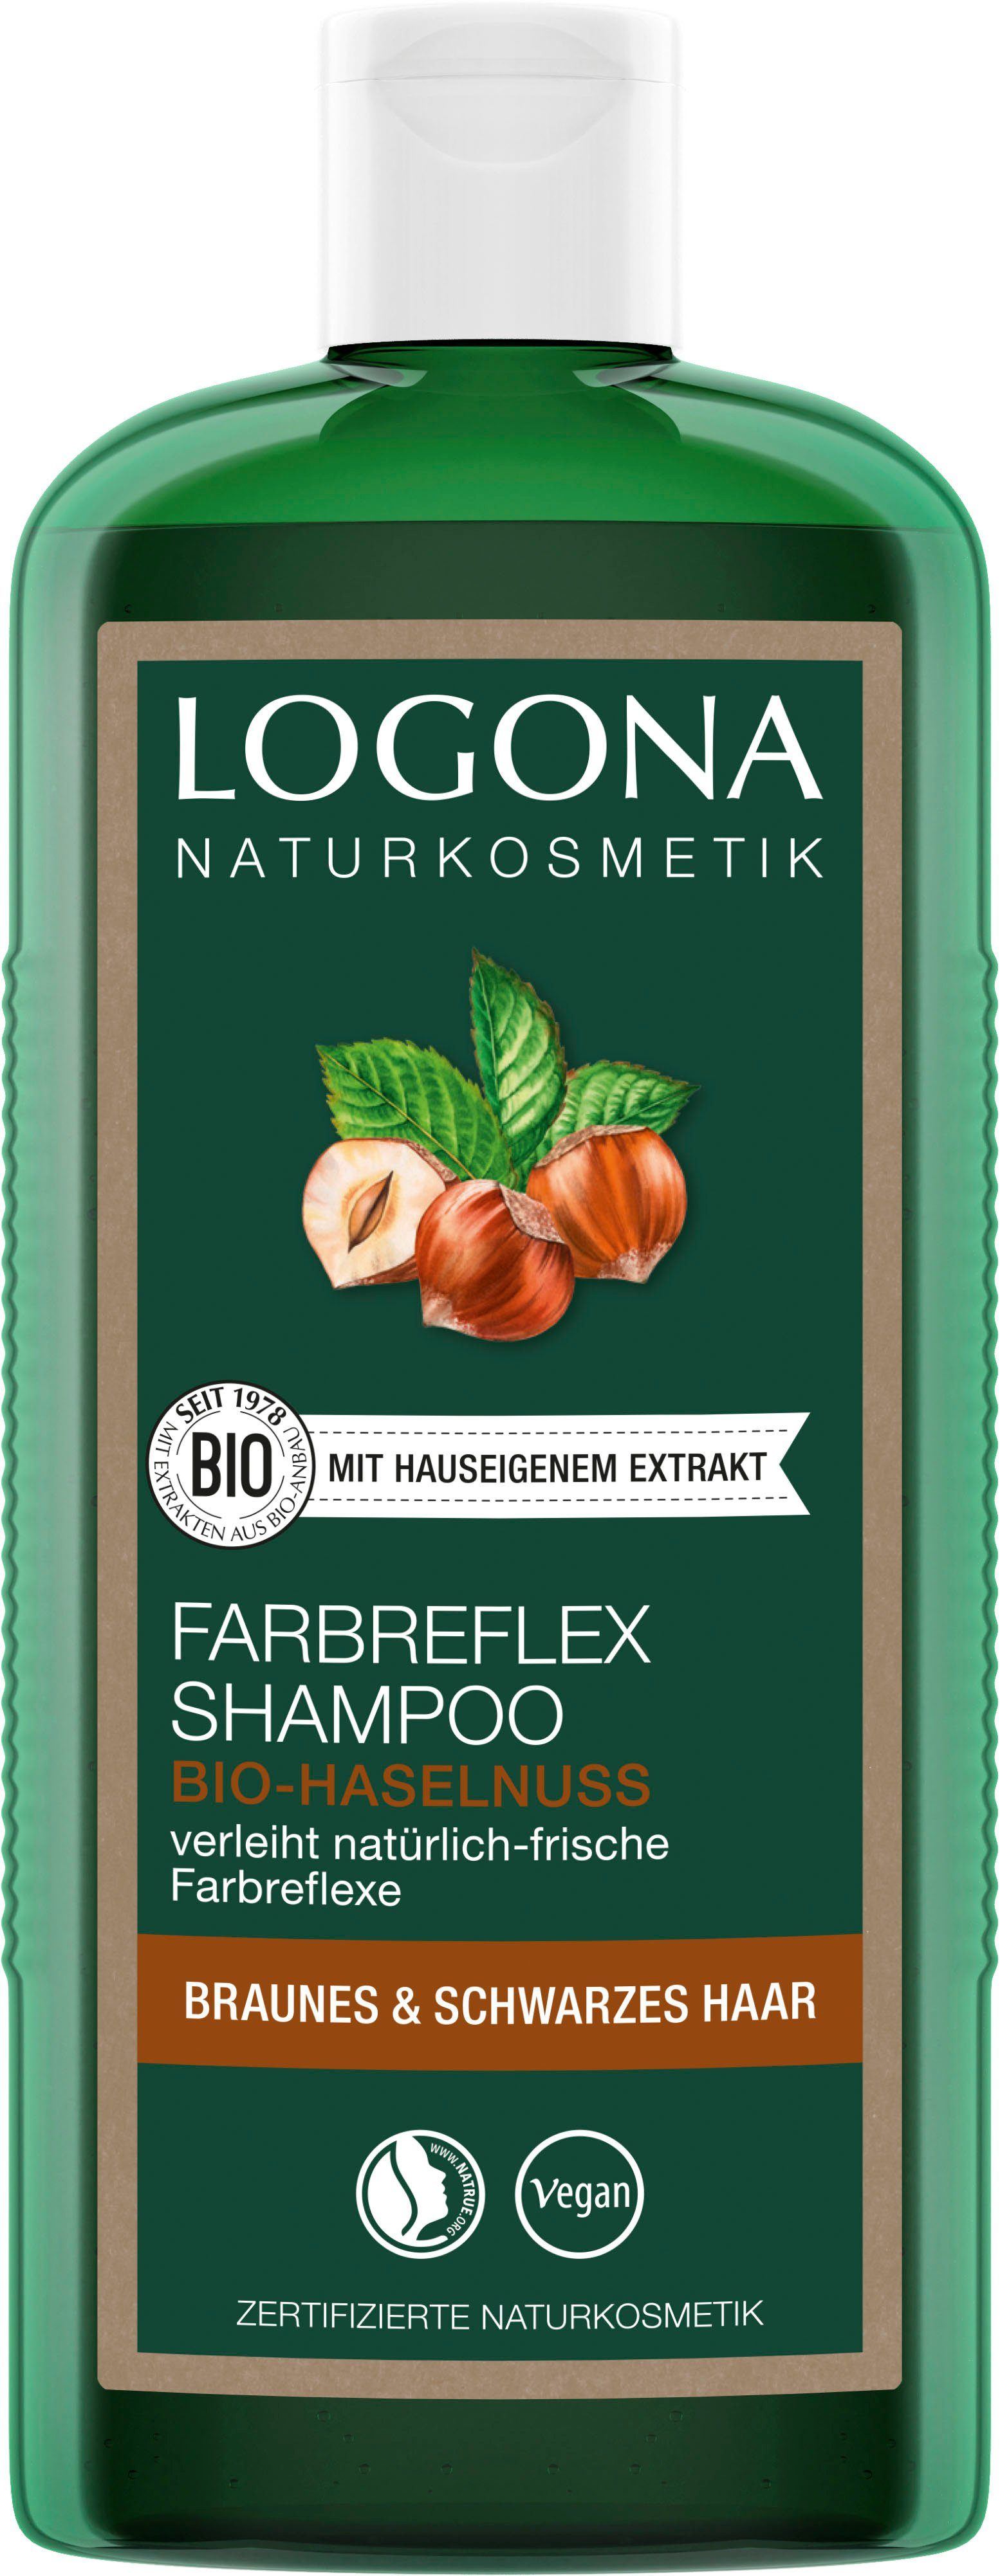 Offizielle Website für den Versandhandel Bio-Haselnuss LOGONA Farbreflex Haarshampoo Logona Braun-Schwarz Shampoo